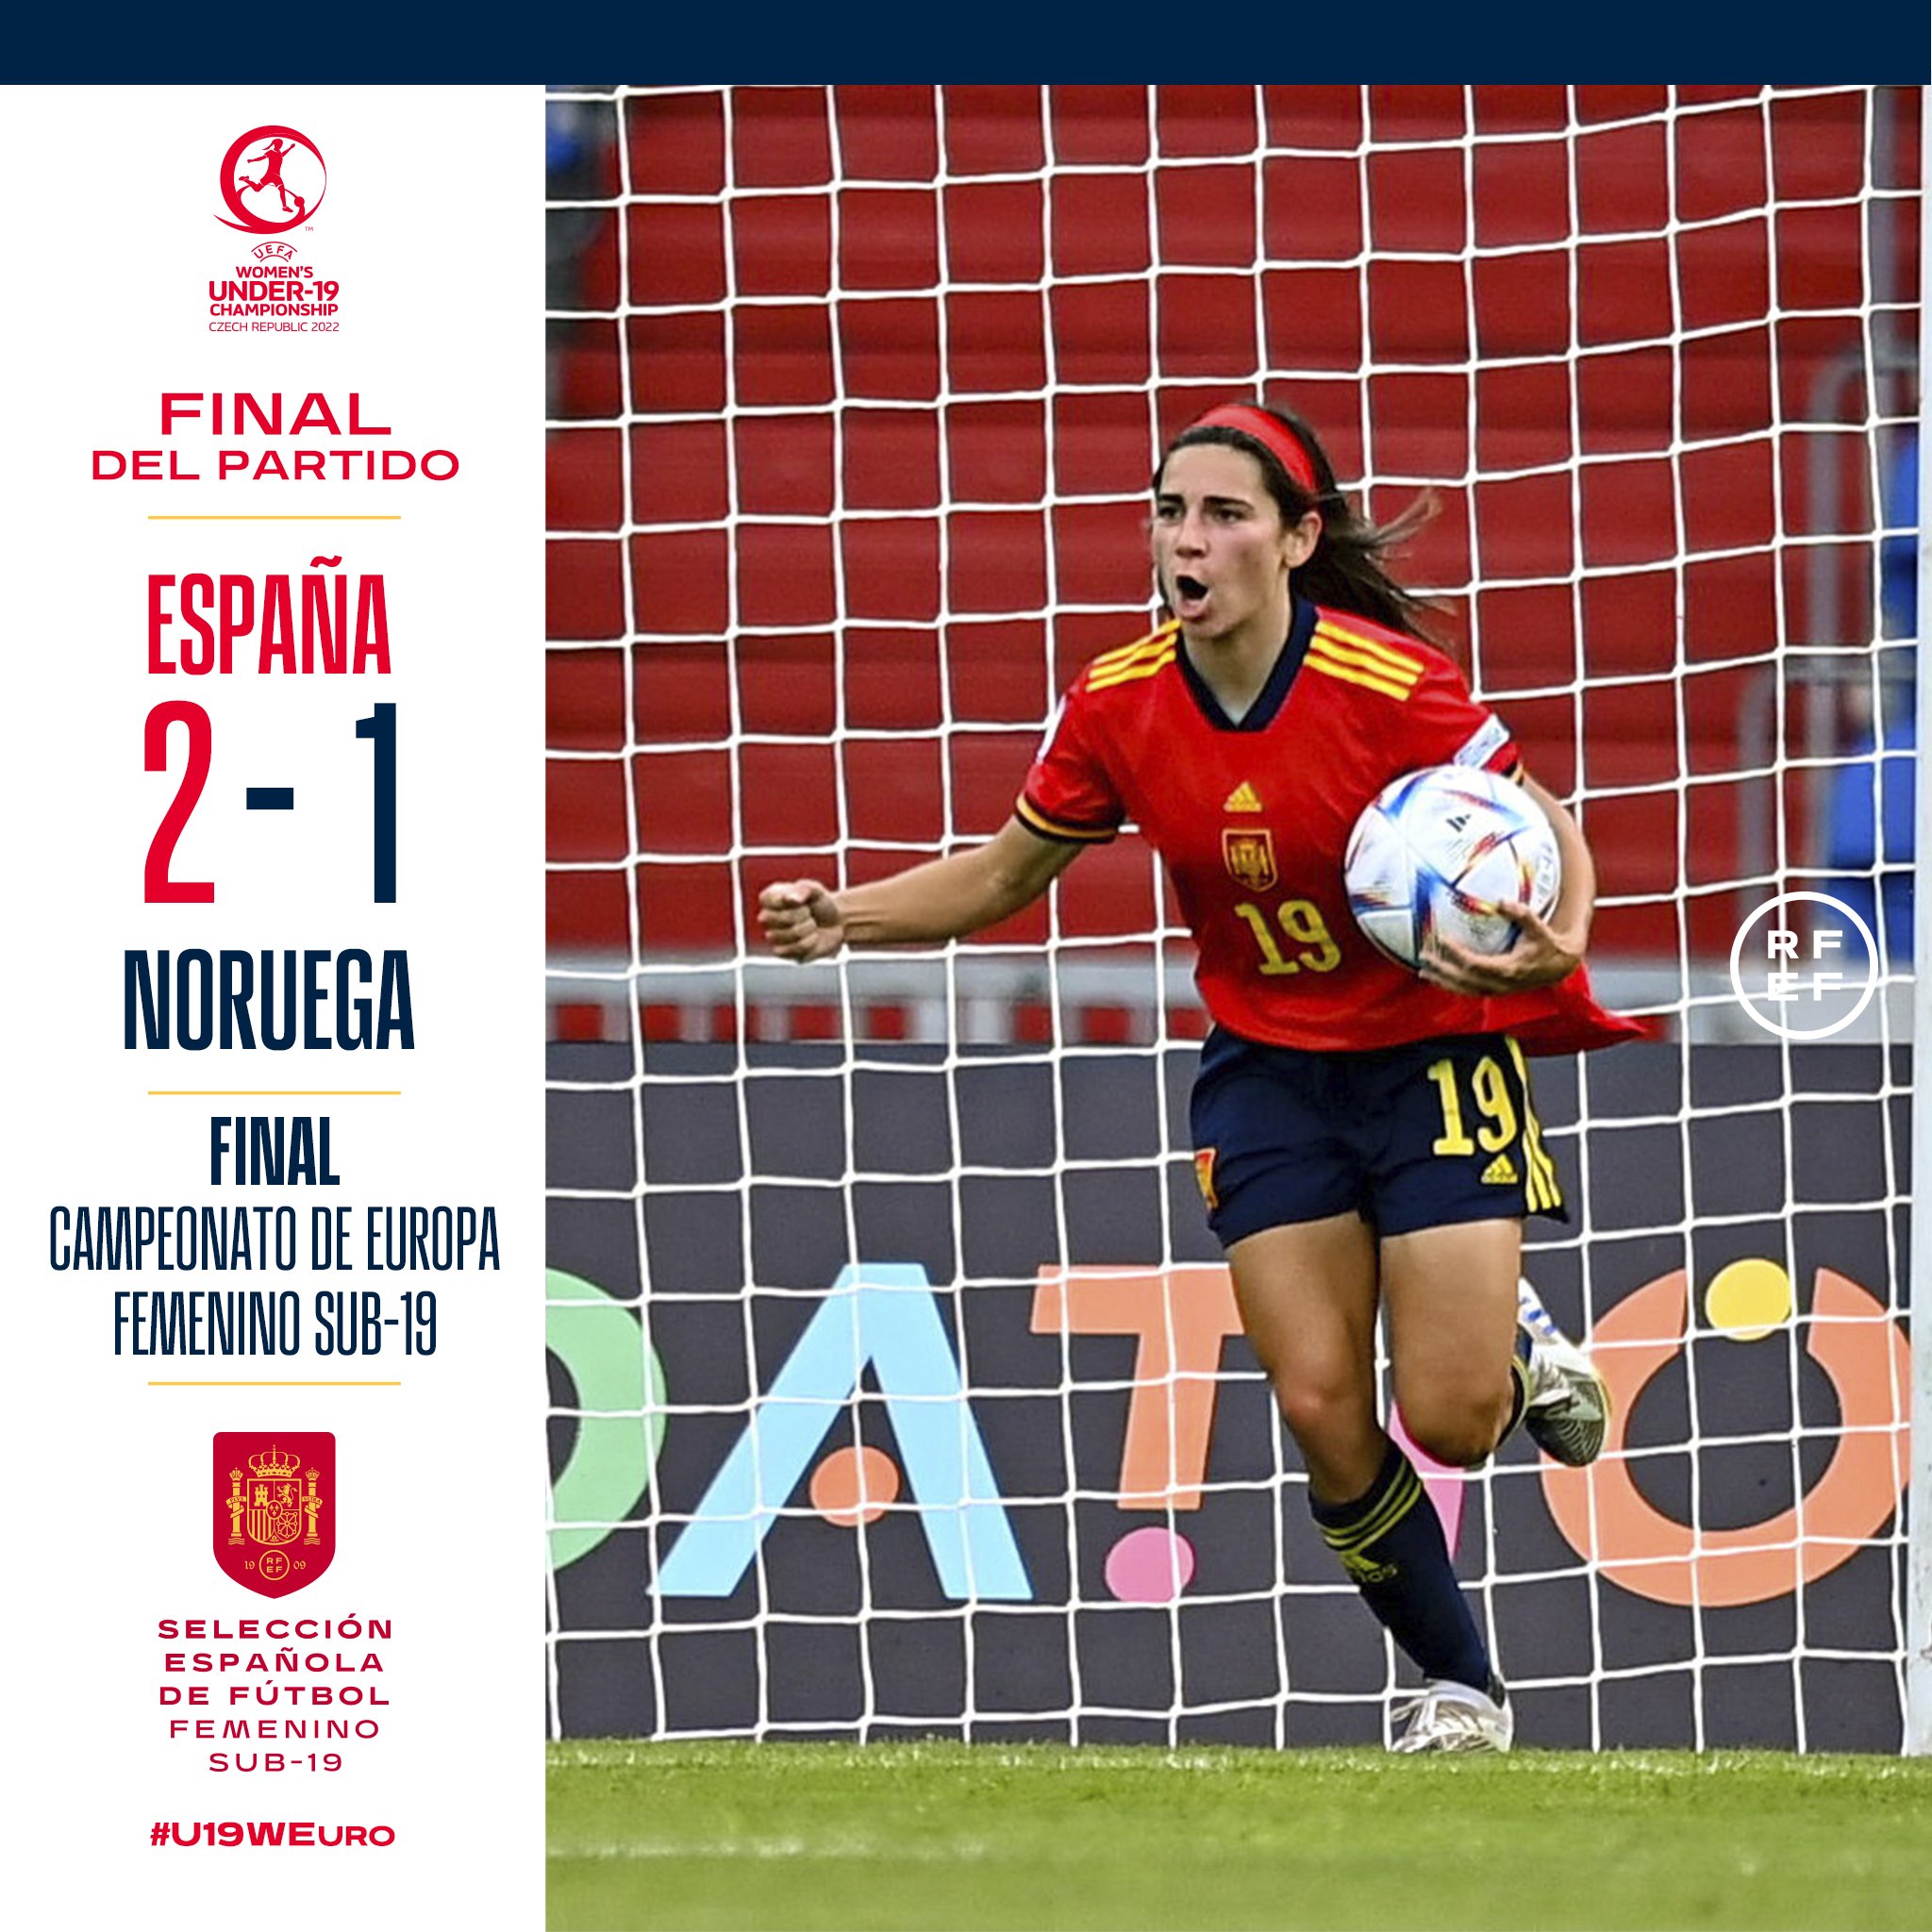 Selección Española Femenina de Fútbol on Twitter: "¡¡𝗙𝗜𝗡𝗔𝗟, 𝗙𝗜𝗡𝗔𝗟, 𝗙𝗜𝗡𝗔𝗟!! 🥇 Estas chicas son de 𝗢𝗥𝗢. REMONTADA y VICTORIA ante Noruega para conquistar el 𝗰𝘂𝗮𝗿𝘁𝗼 𝘀𝘂𝗯-𝟭𝟵. 💪🏻 Premio al esfuerzo, el